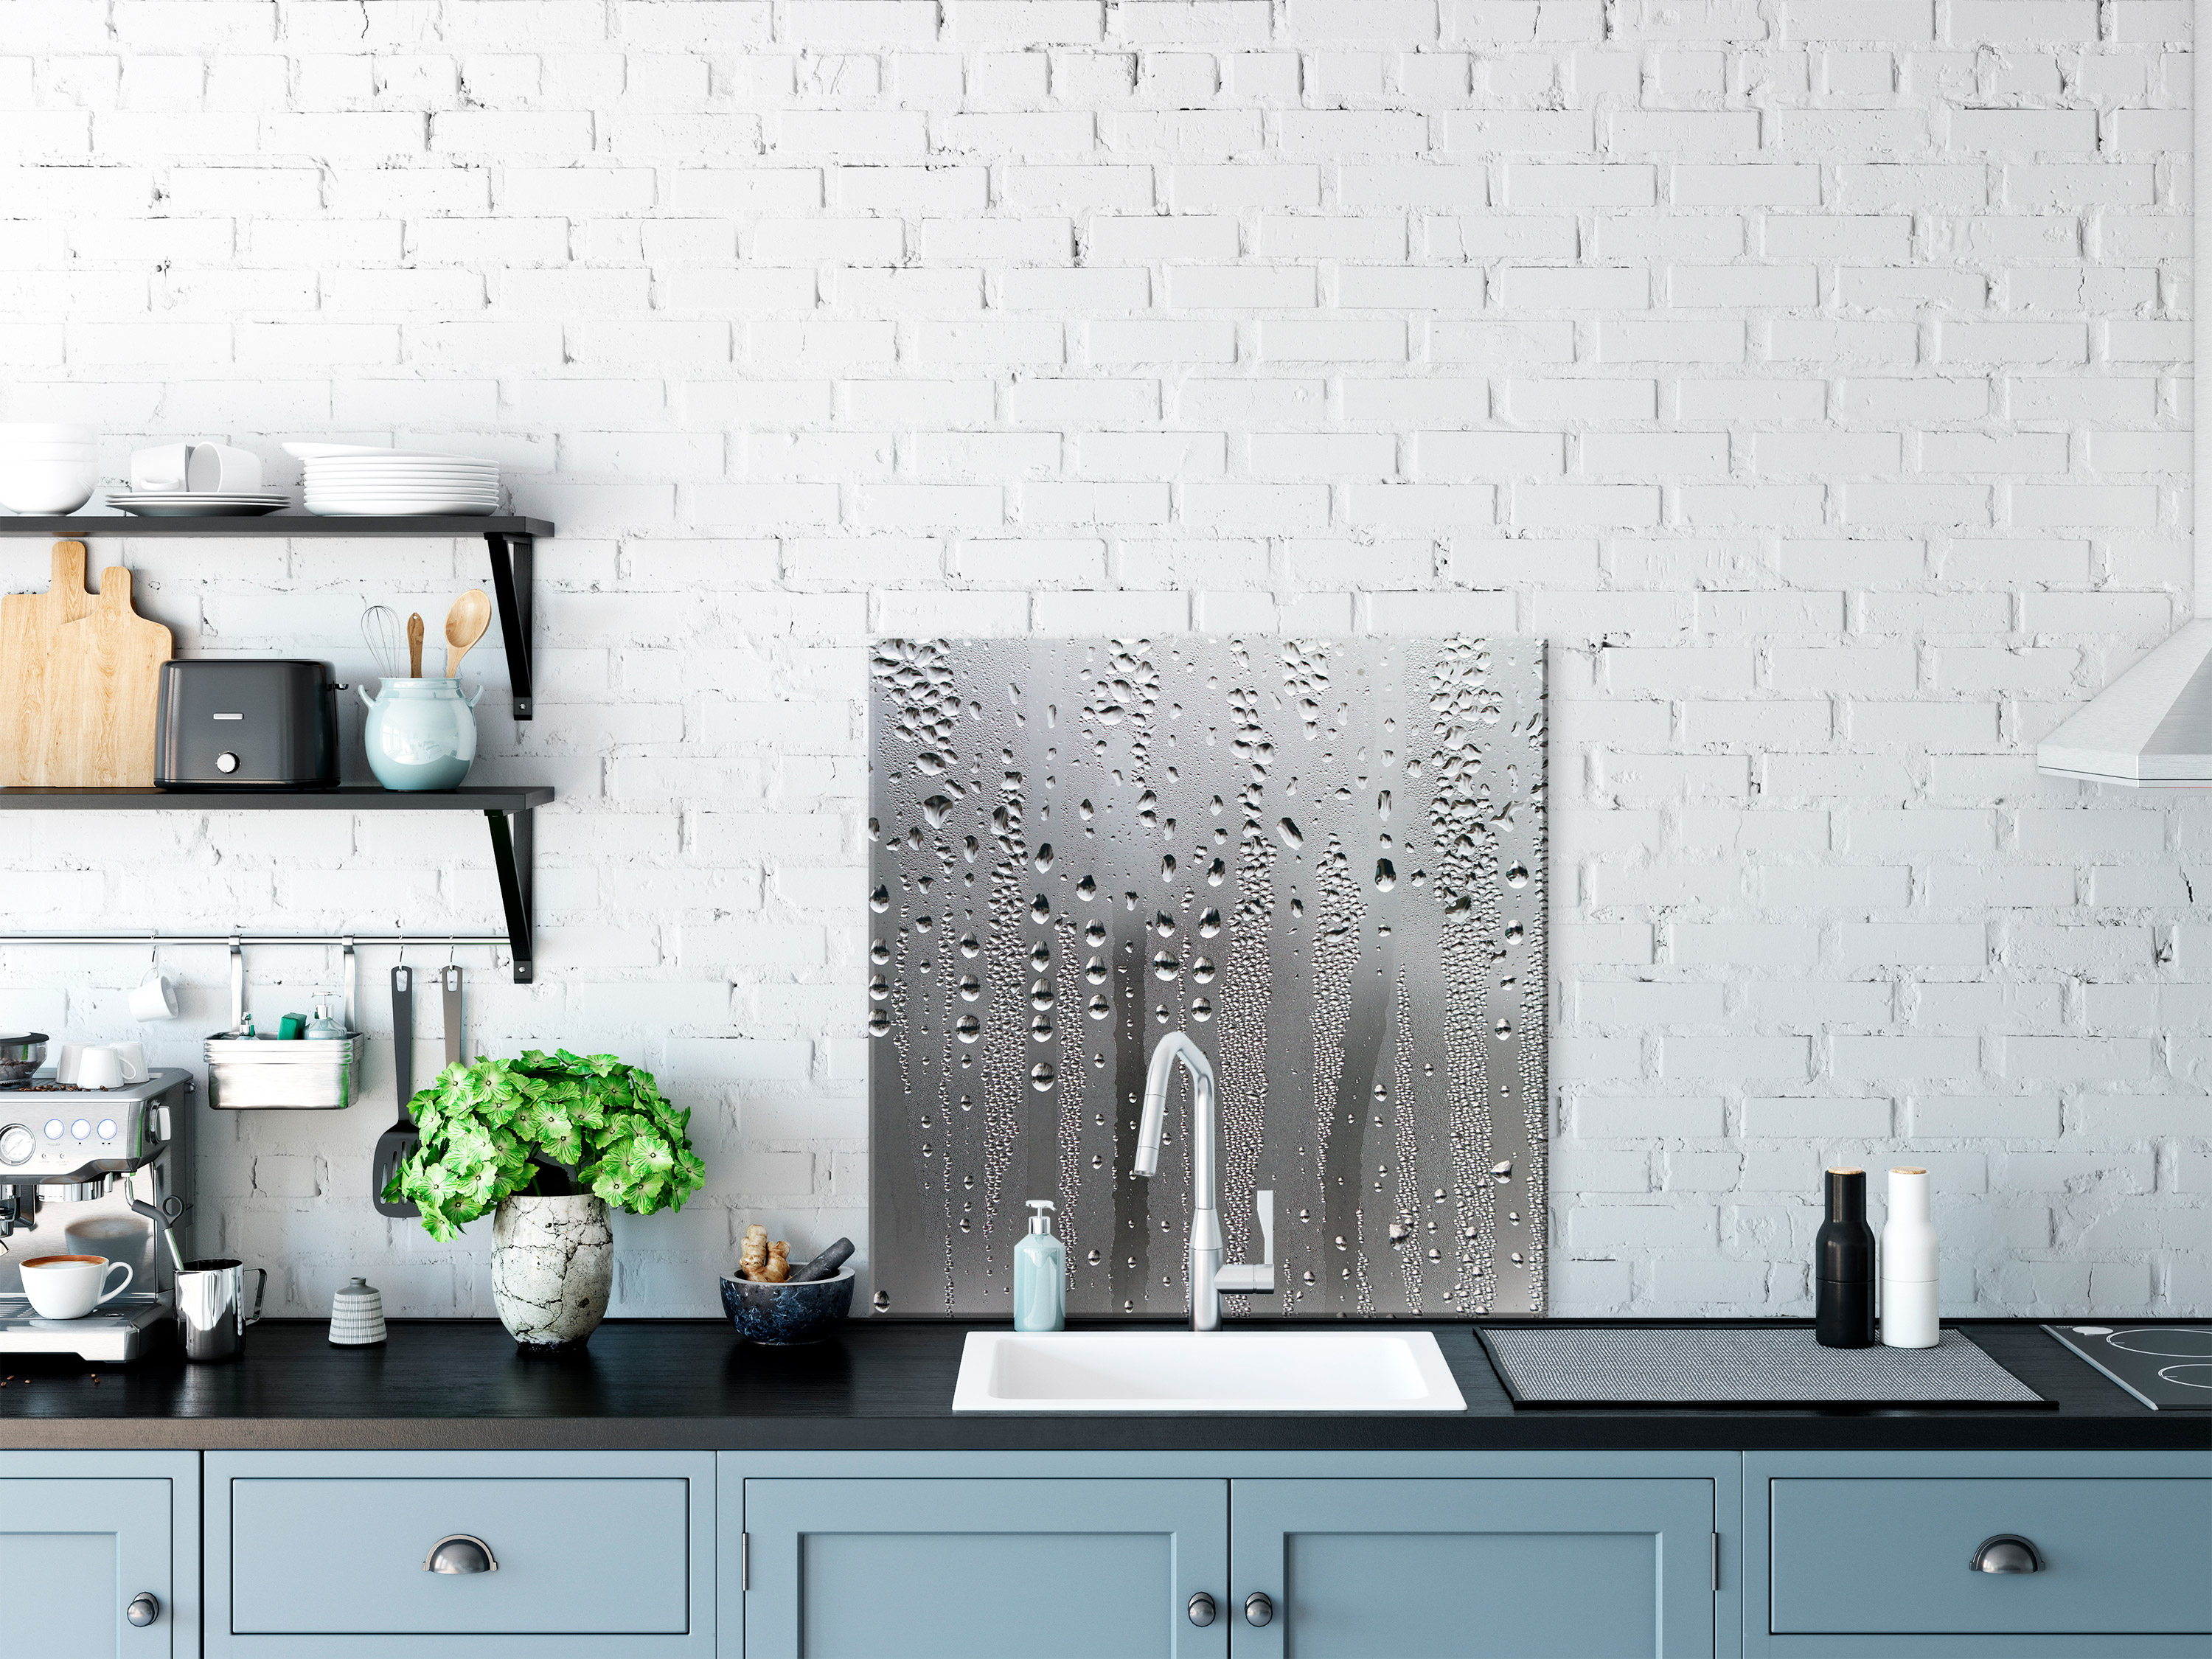 Tempered Glass Backsplash for Kitchen Splashback Deco Wall Panel nB0064aqa eBay